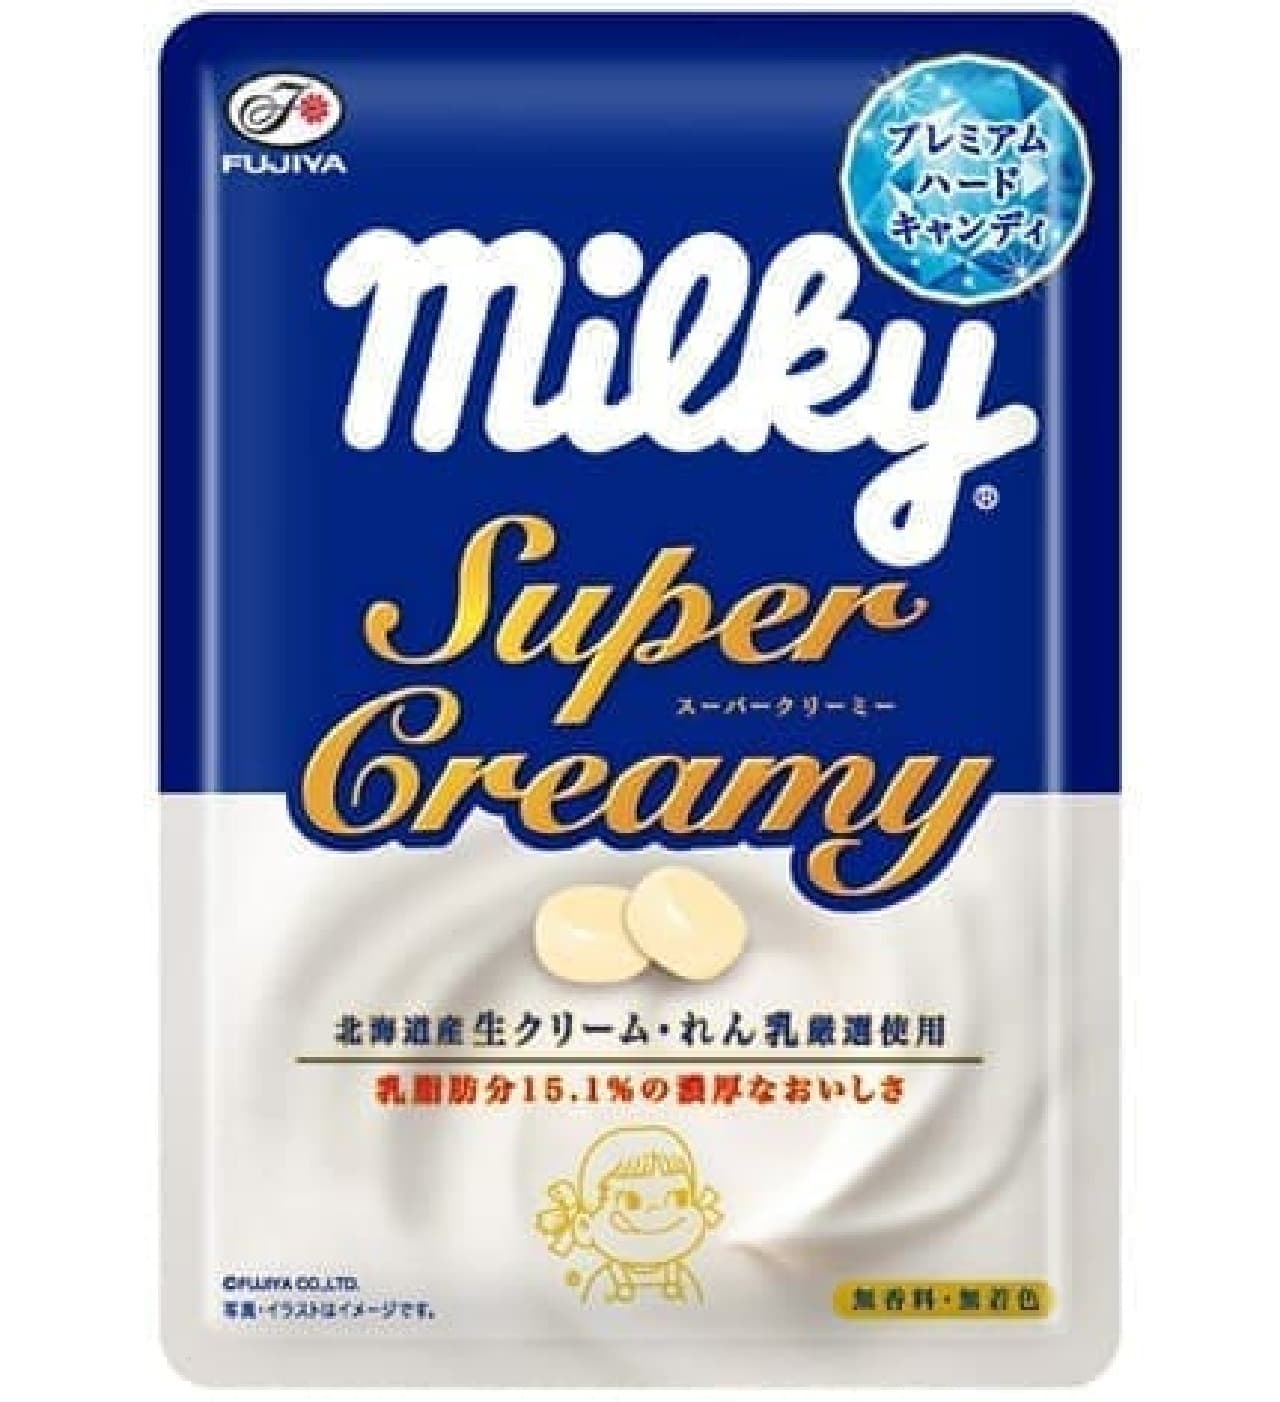 "Super Cream Milky (Premium Hard)"